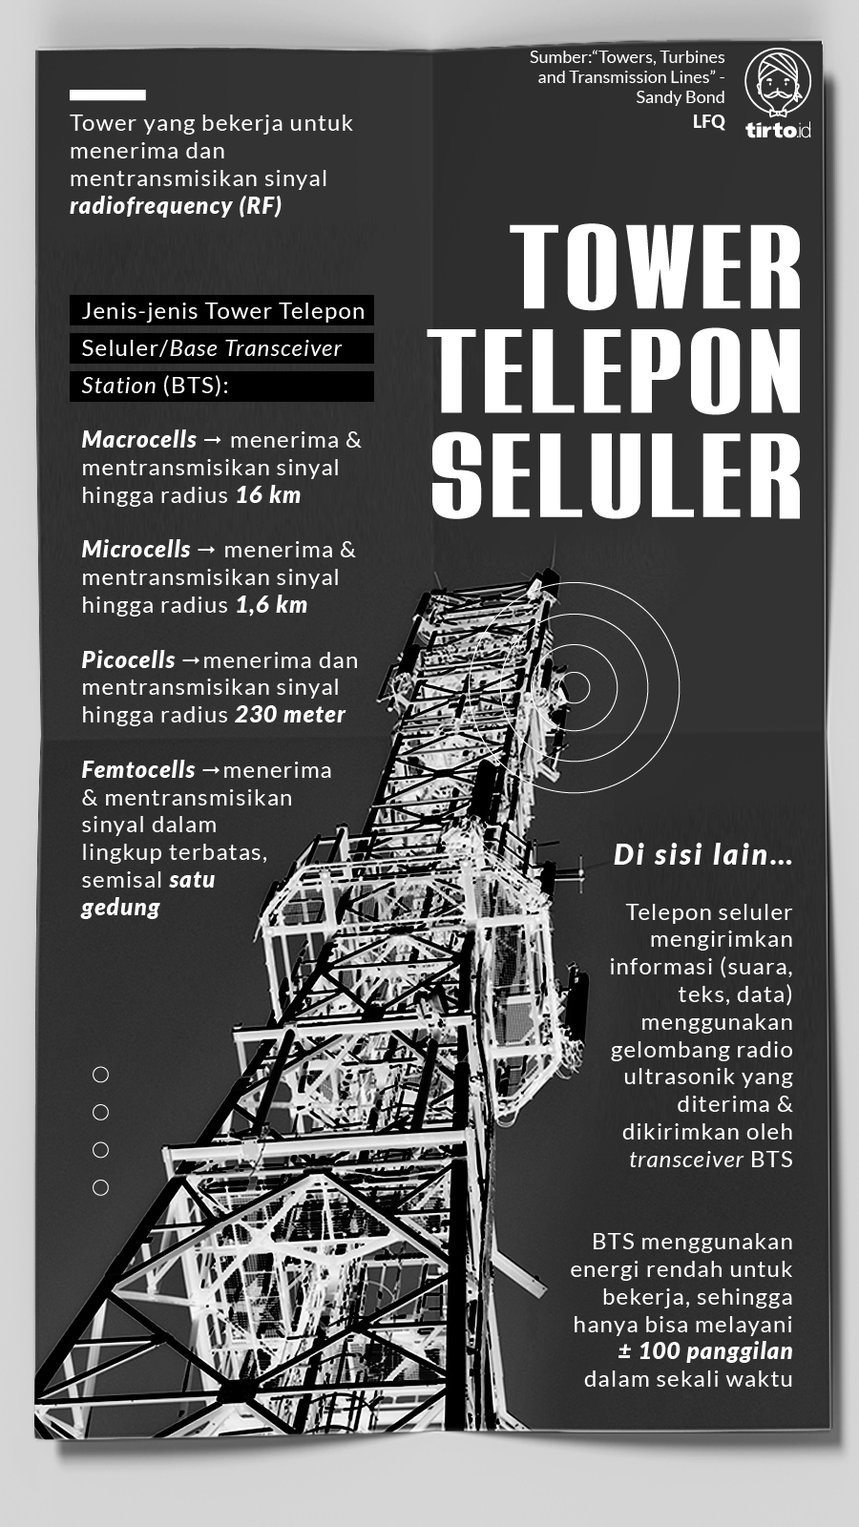 Infografik tower telepon seluler